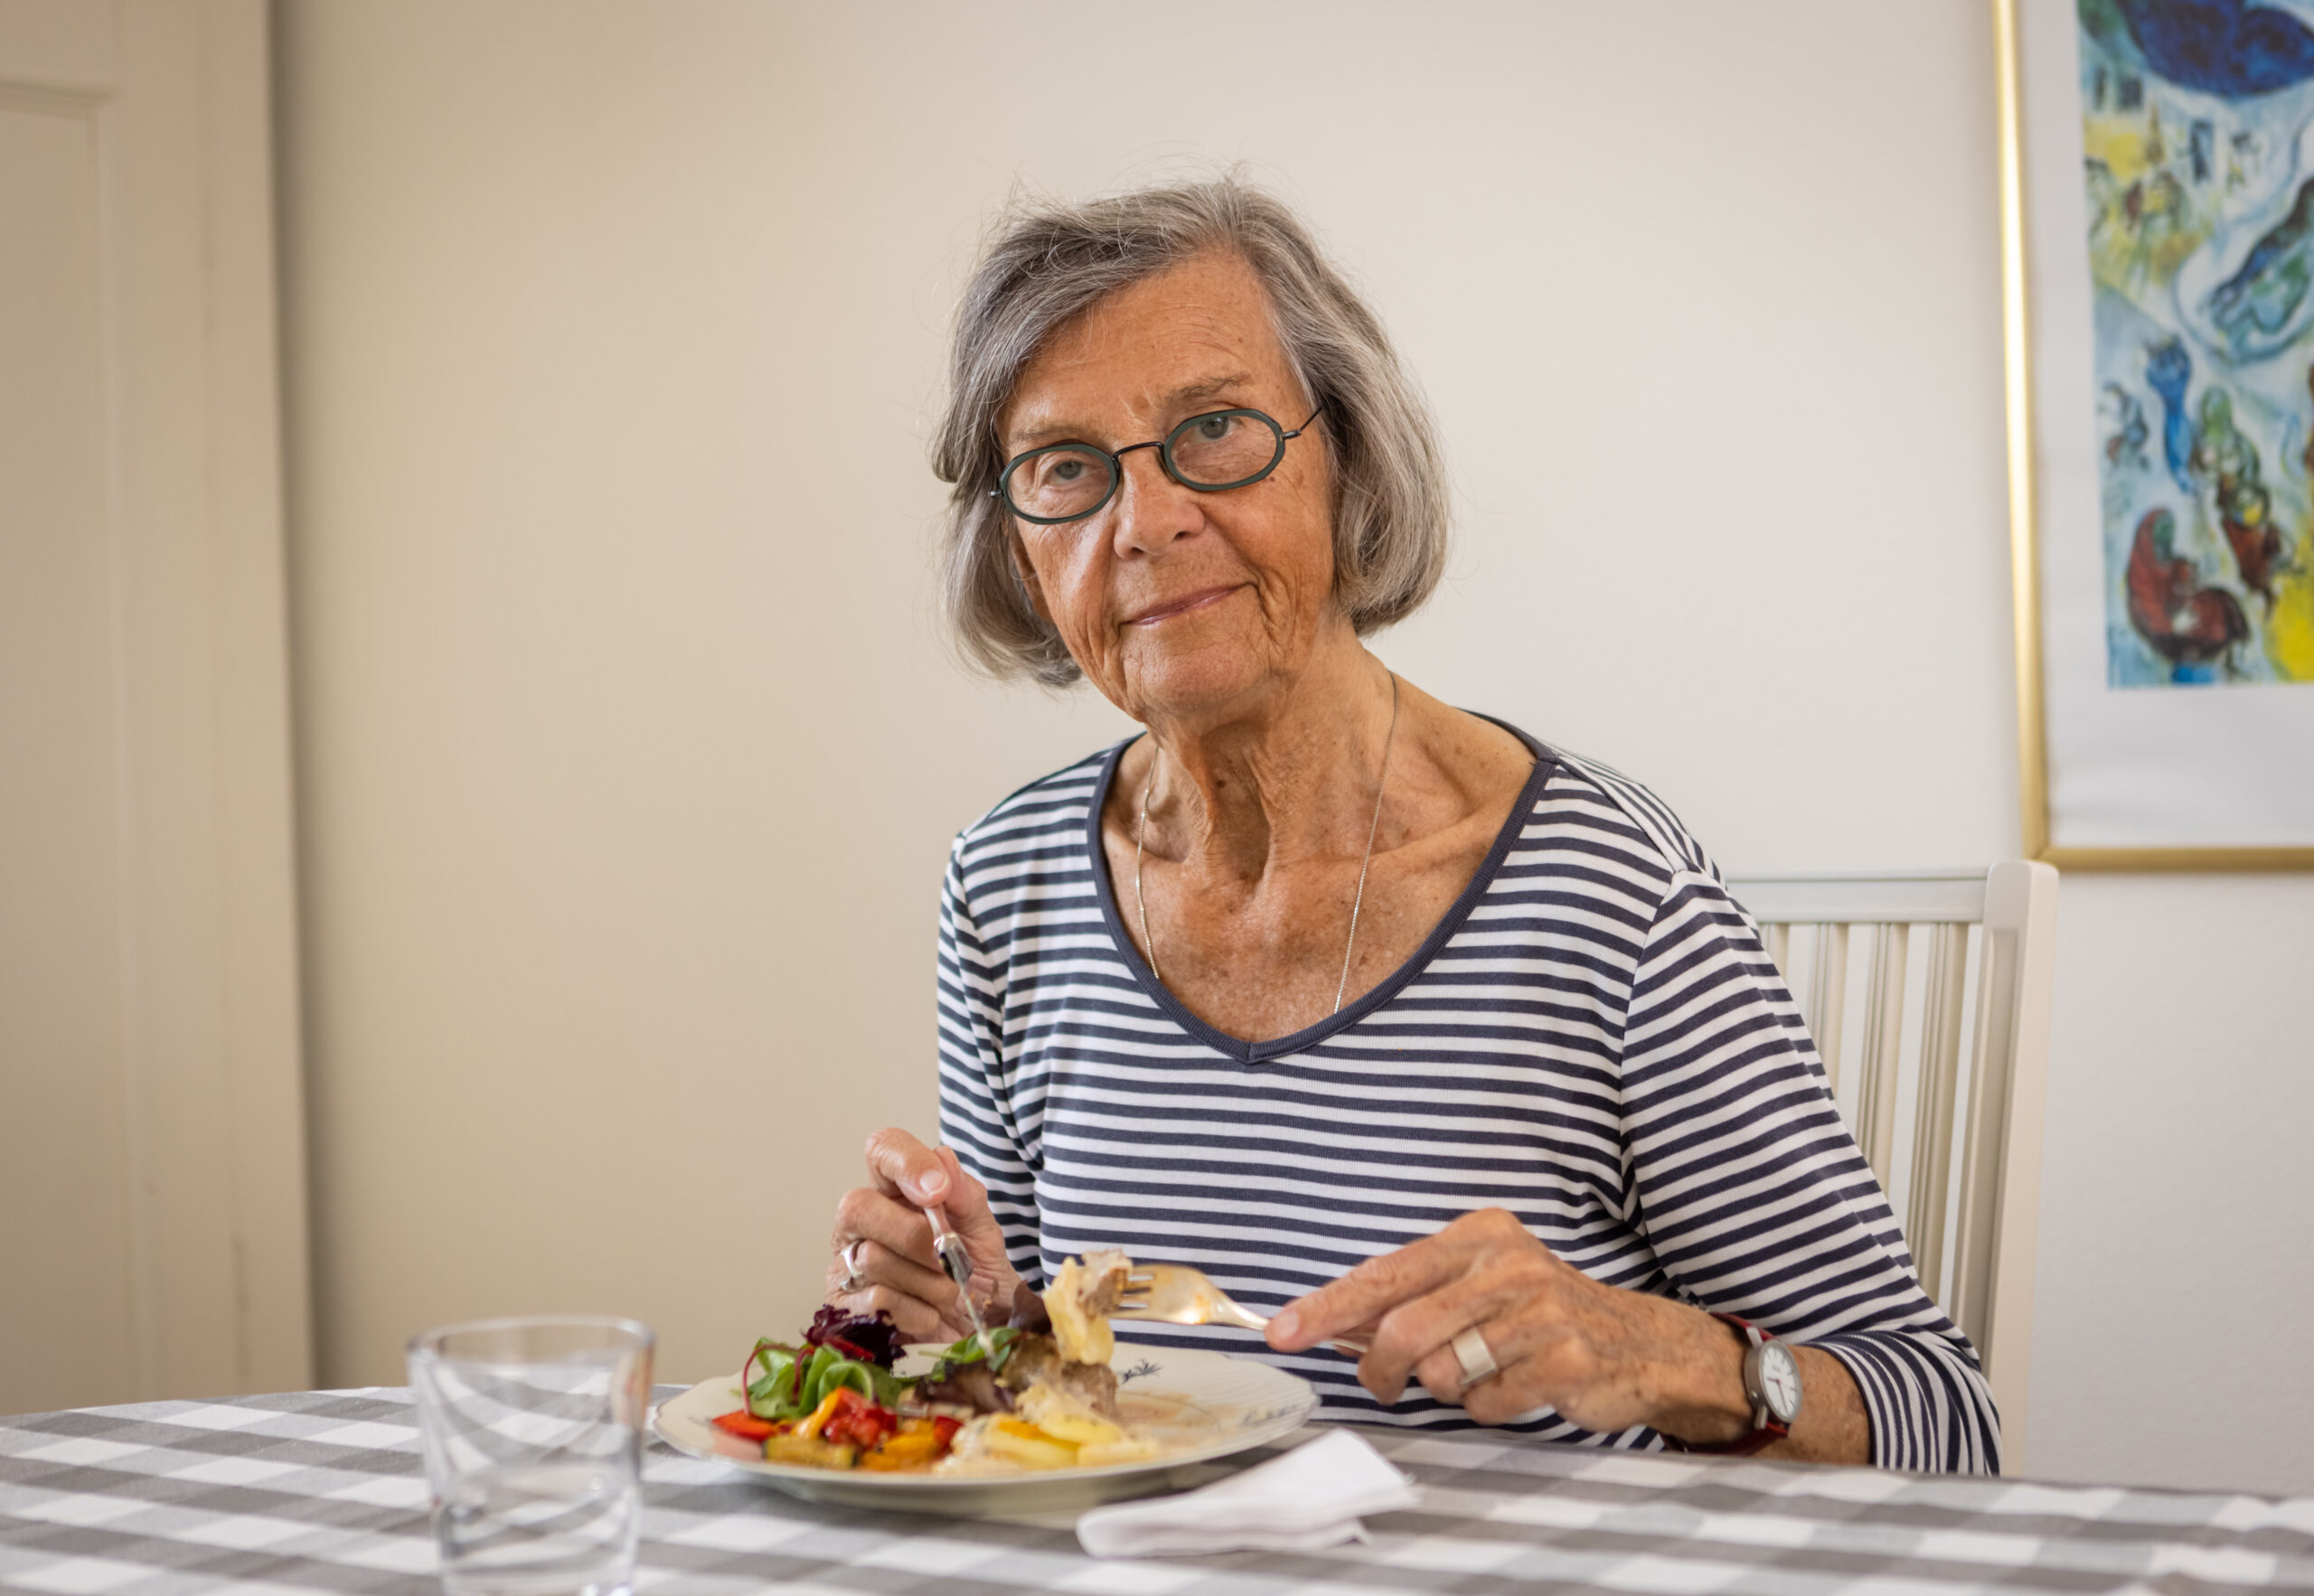 Riksdagswebinarium – Att förebygga undernäring hos äldre